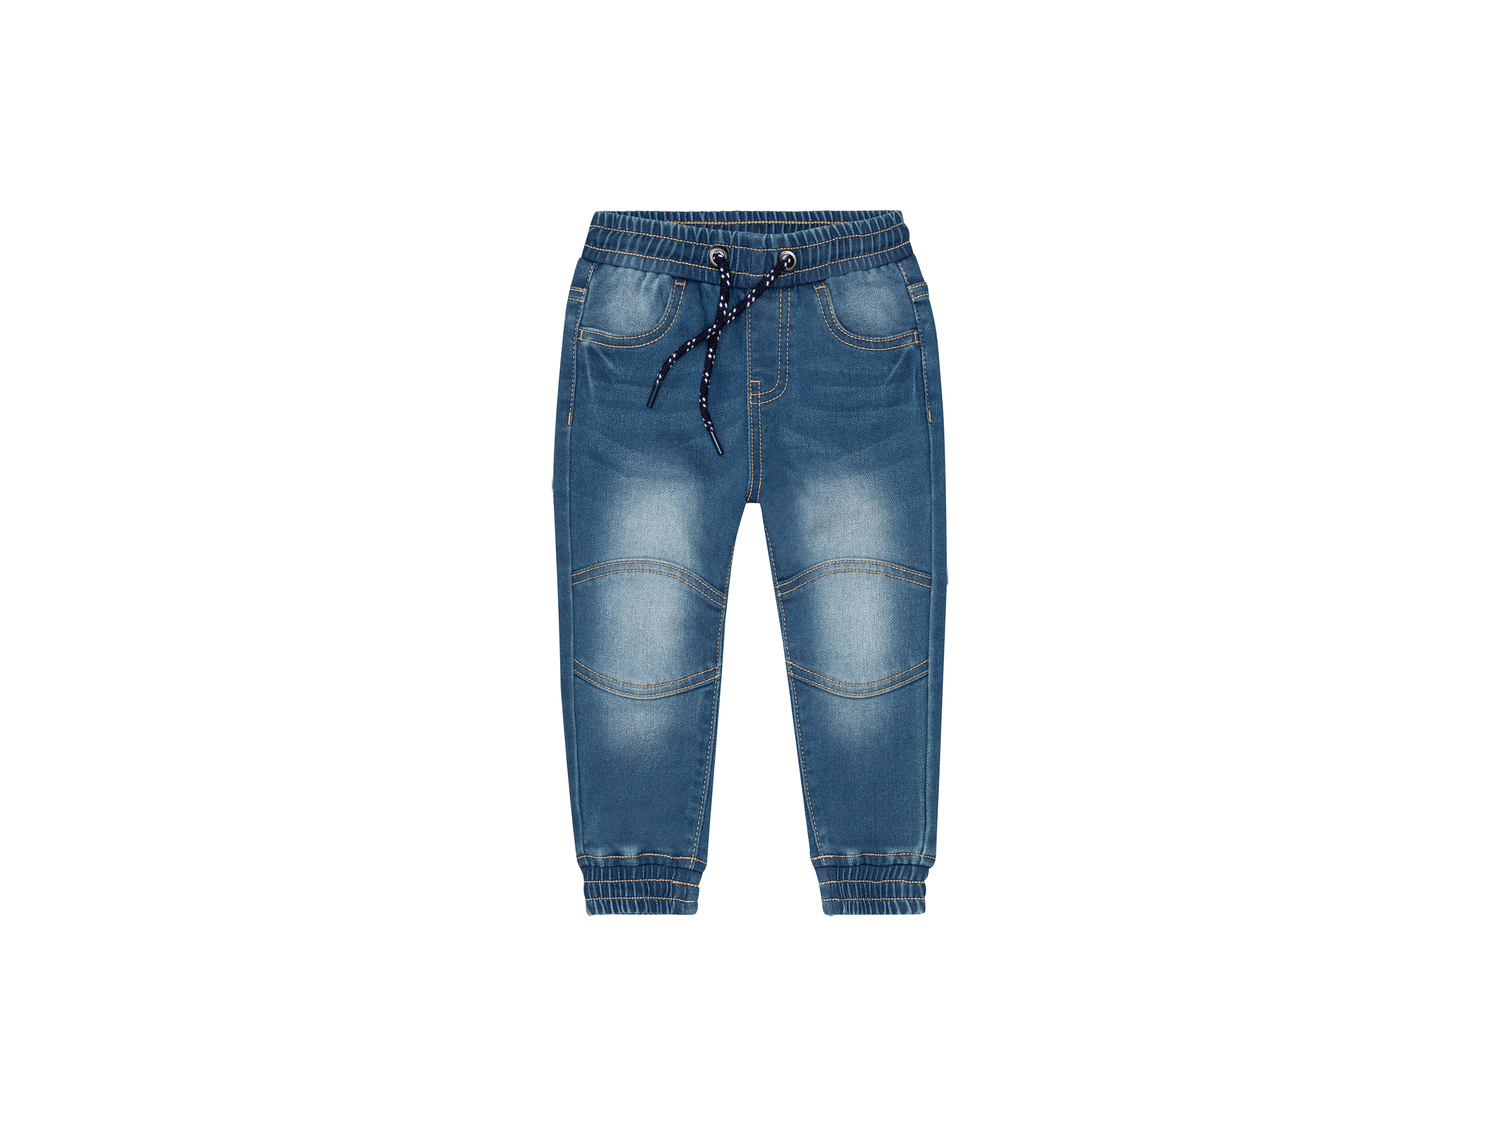 Joggers in jeans da bambino Lupilu-new, prezzo 7.99 &#8364; 
Misure: 1-6 anni
Taglie ...